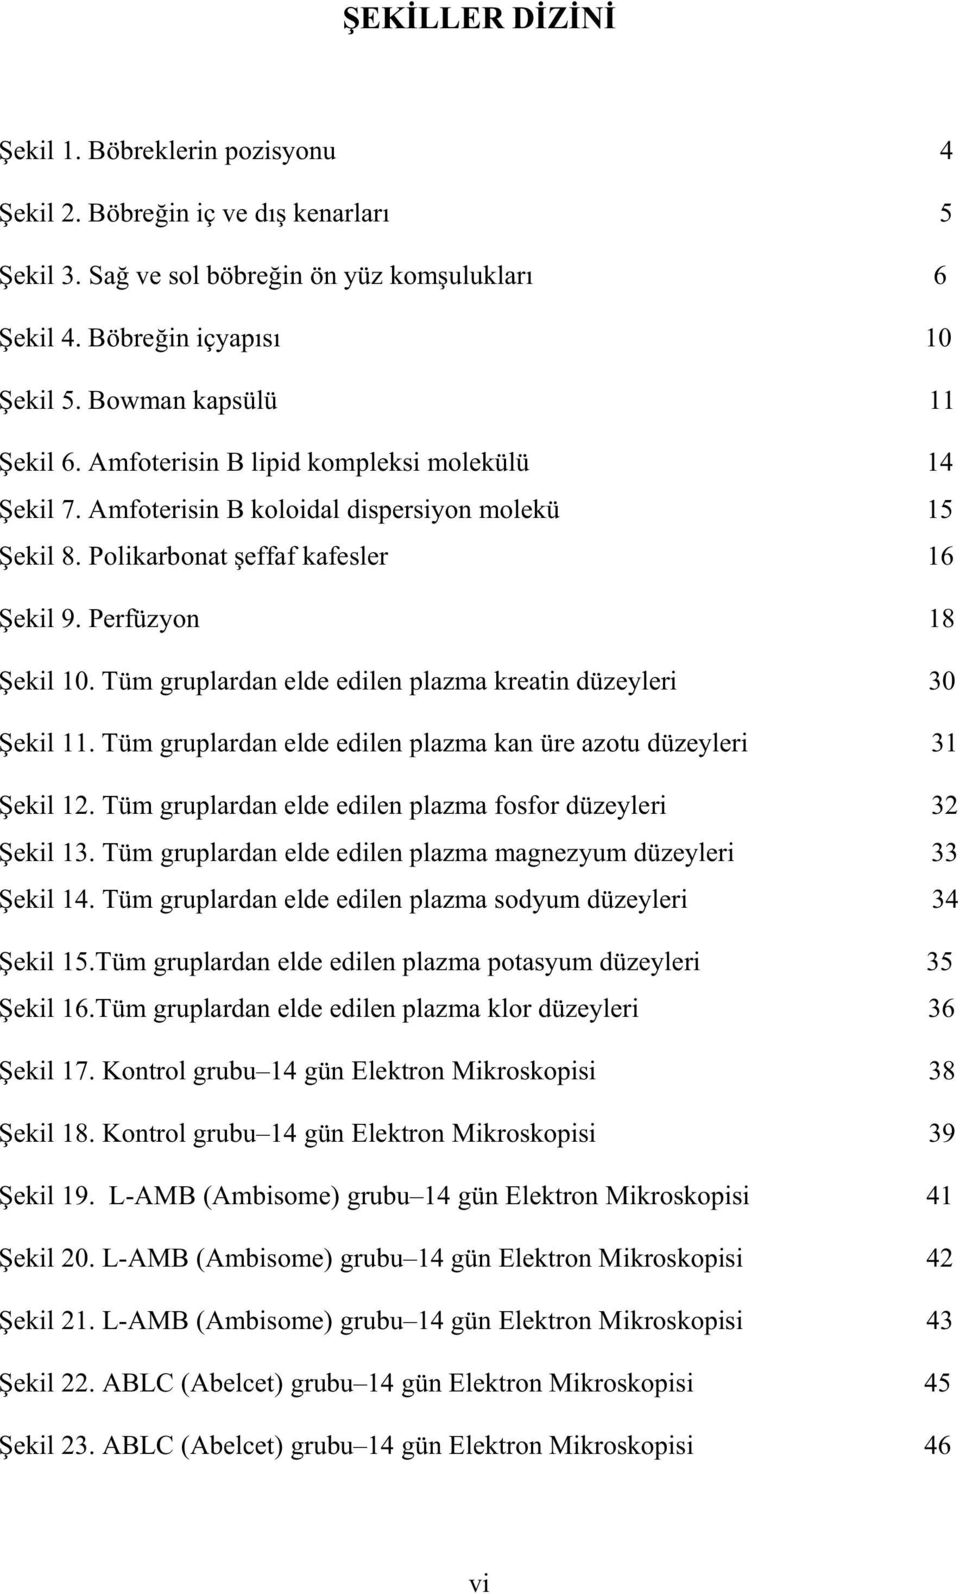 Tüm gruplardan elde edilen plazma kreatin düzeyleri 30 ekil 11. Tüm gruplardan elde edilen plazma kan üre azotu düzeyleri 31 ekil 12. Tüm gruplardan elde edilen plazma fosfor düzeyleri 32 ekil 13.